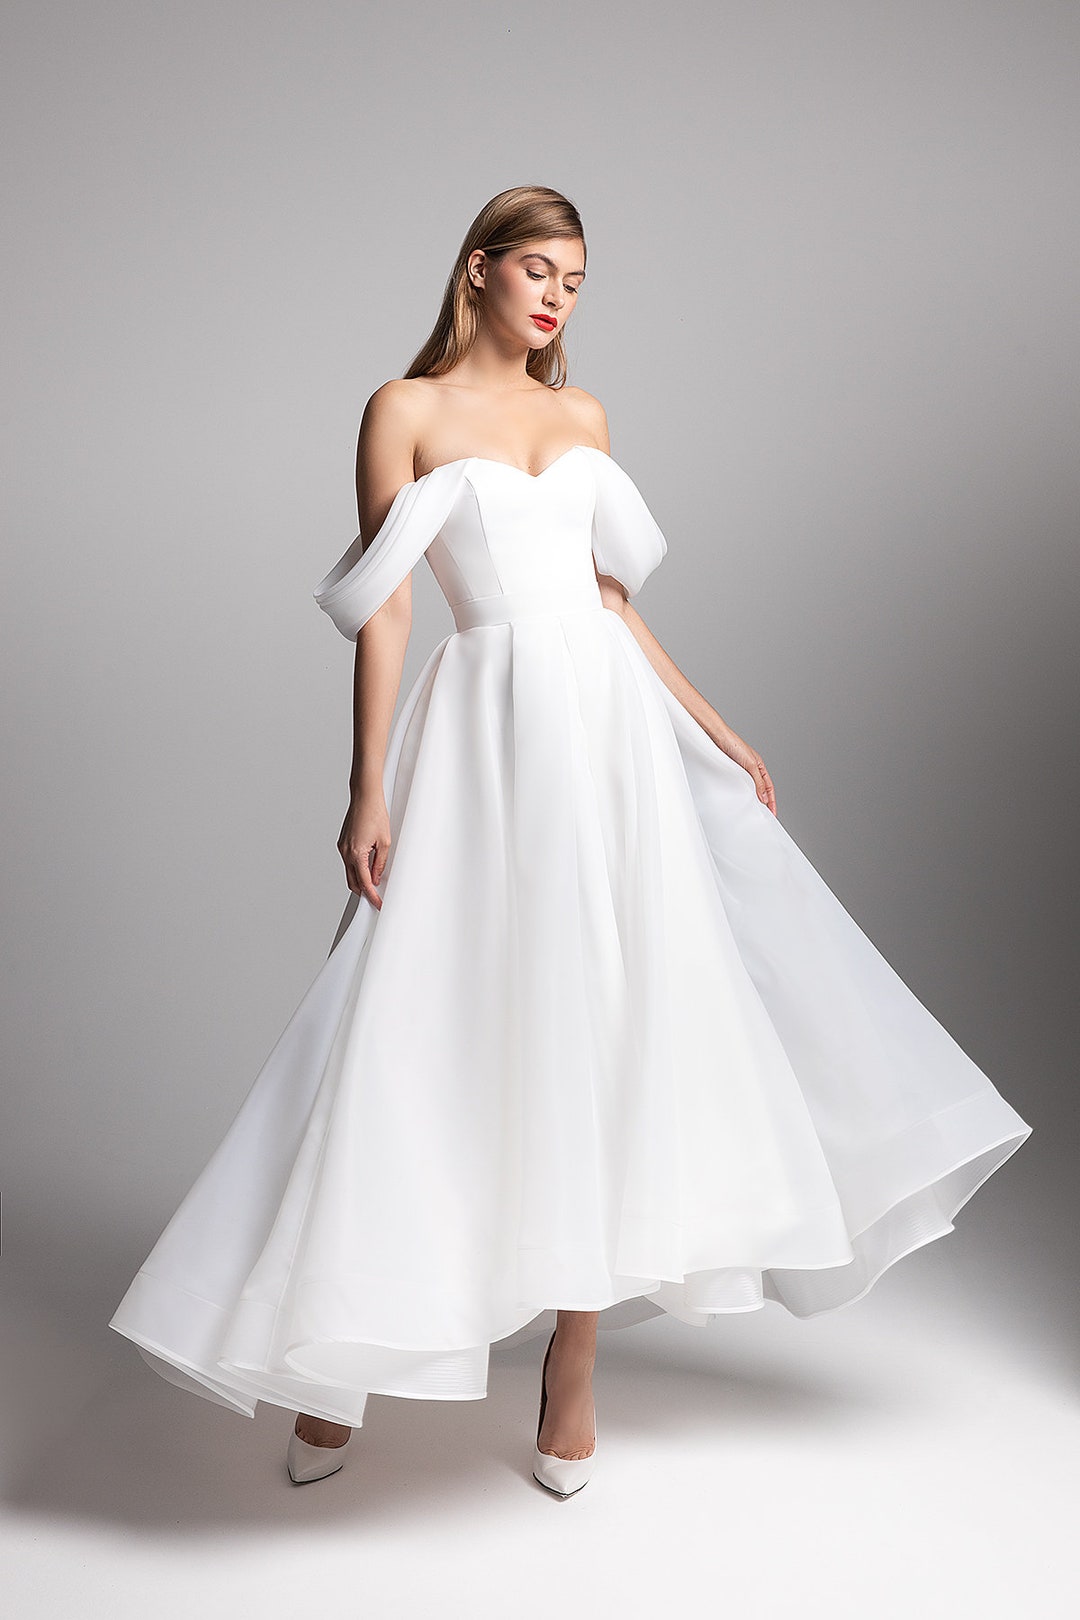 Sexy Wedding Dress ROMILDA. Reception Dress Sexy White Dress Minimalist ...